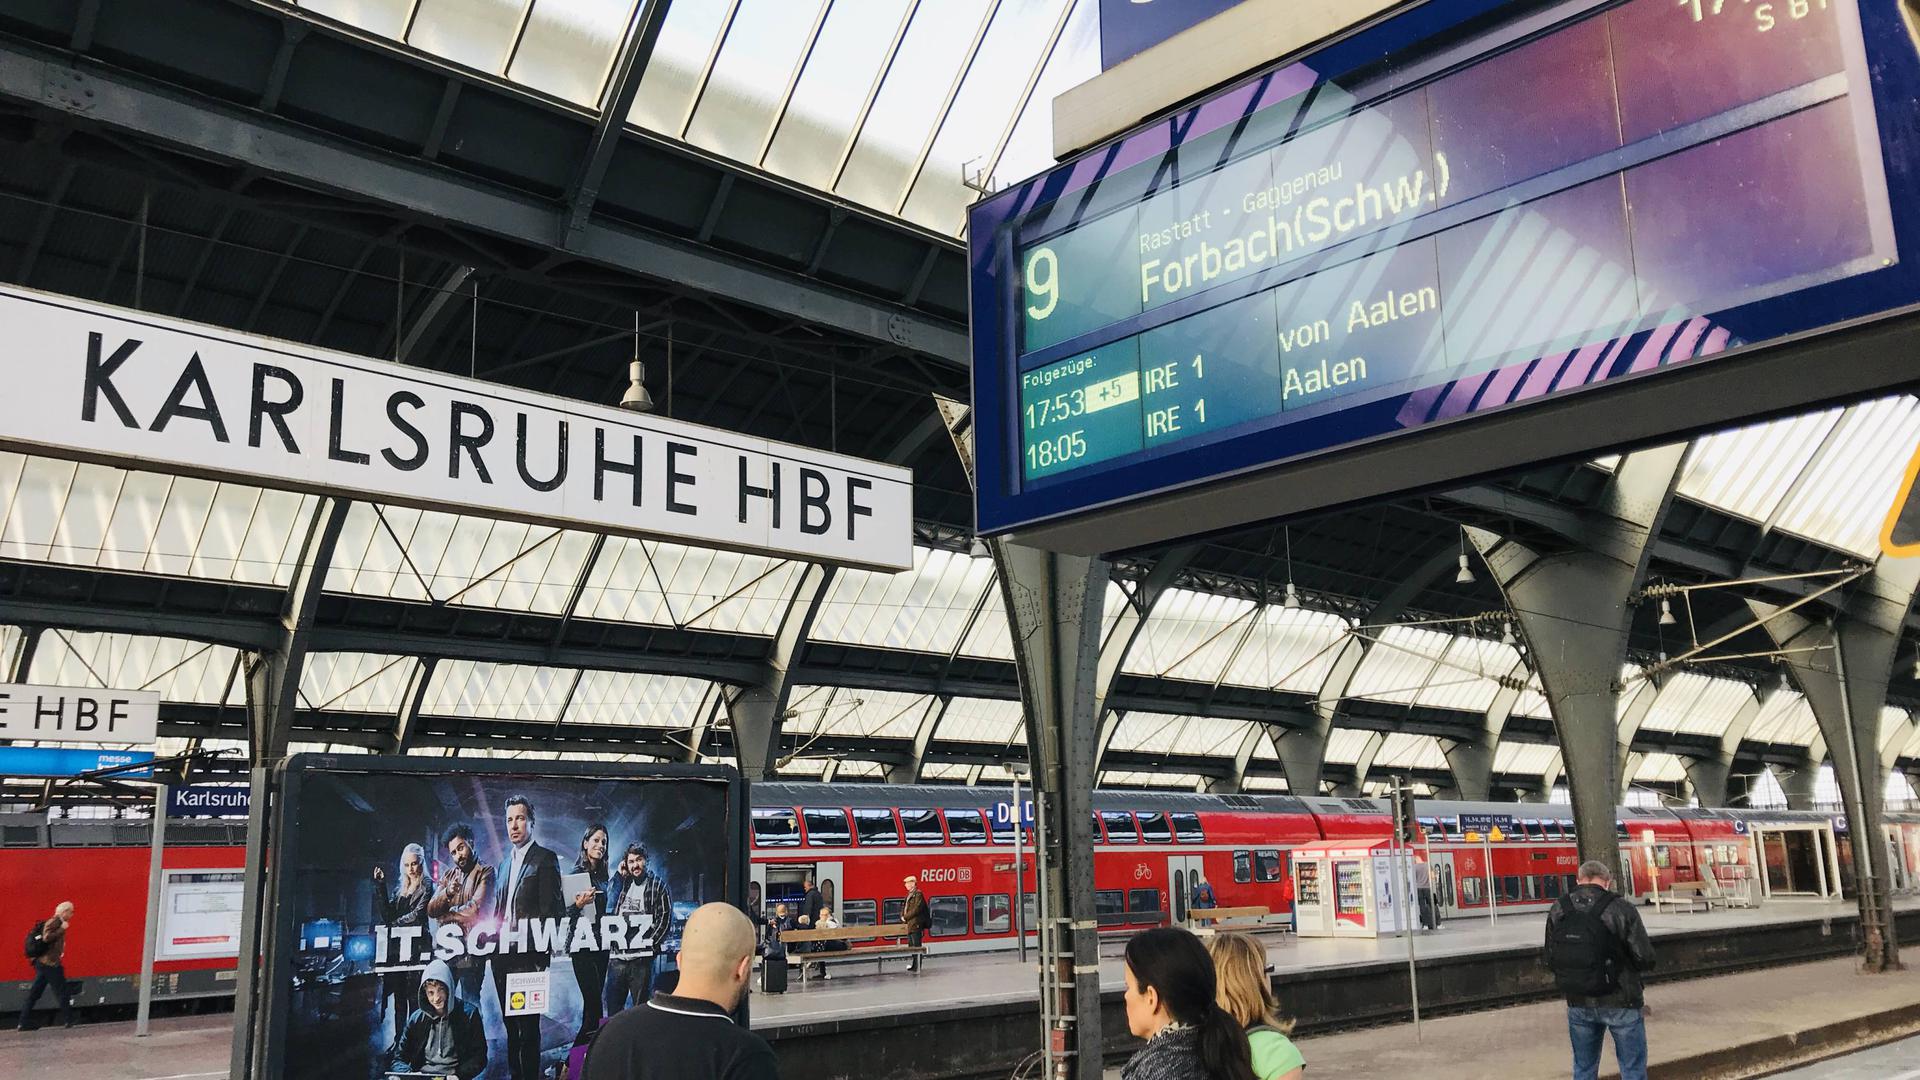  Hauptbahnhof Karlsruhe, Bahnhof, Deutsche Bahn, Bahn, Nahverkehr, Stadtbahn, S-Bahn, Haltestelle